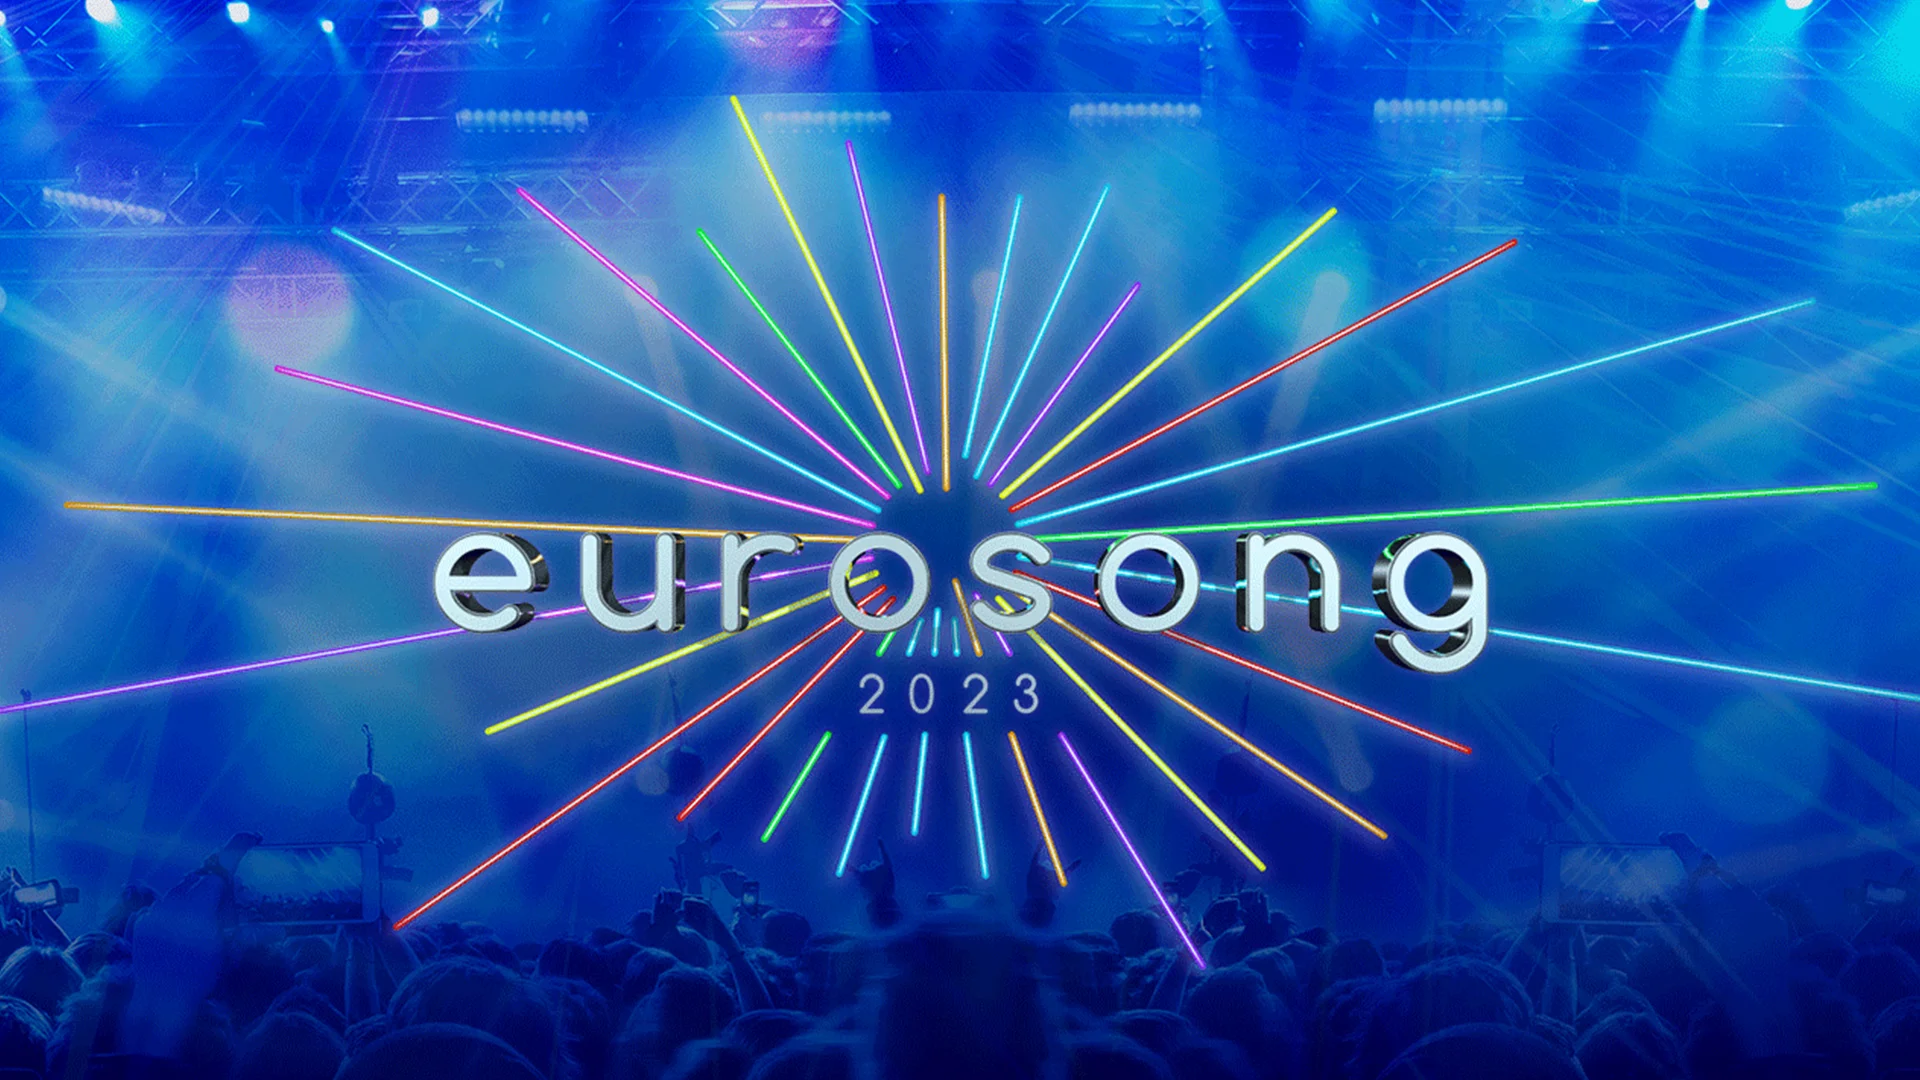 Eurosong Sélection nationale Belgique 2023 à l'Eurovision